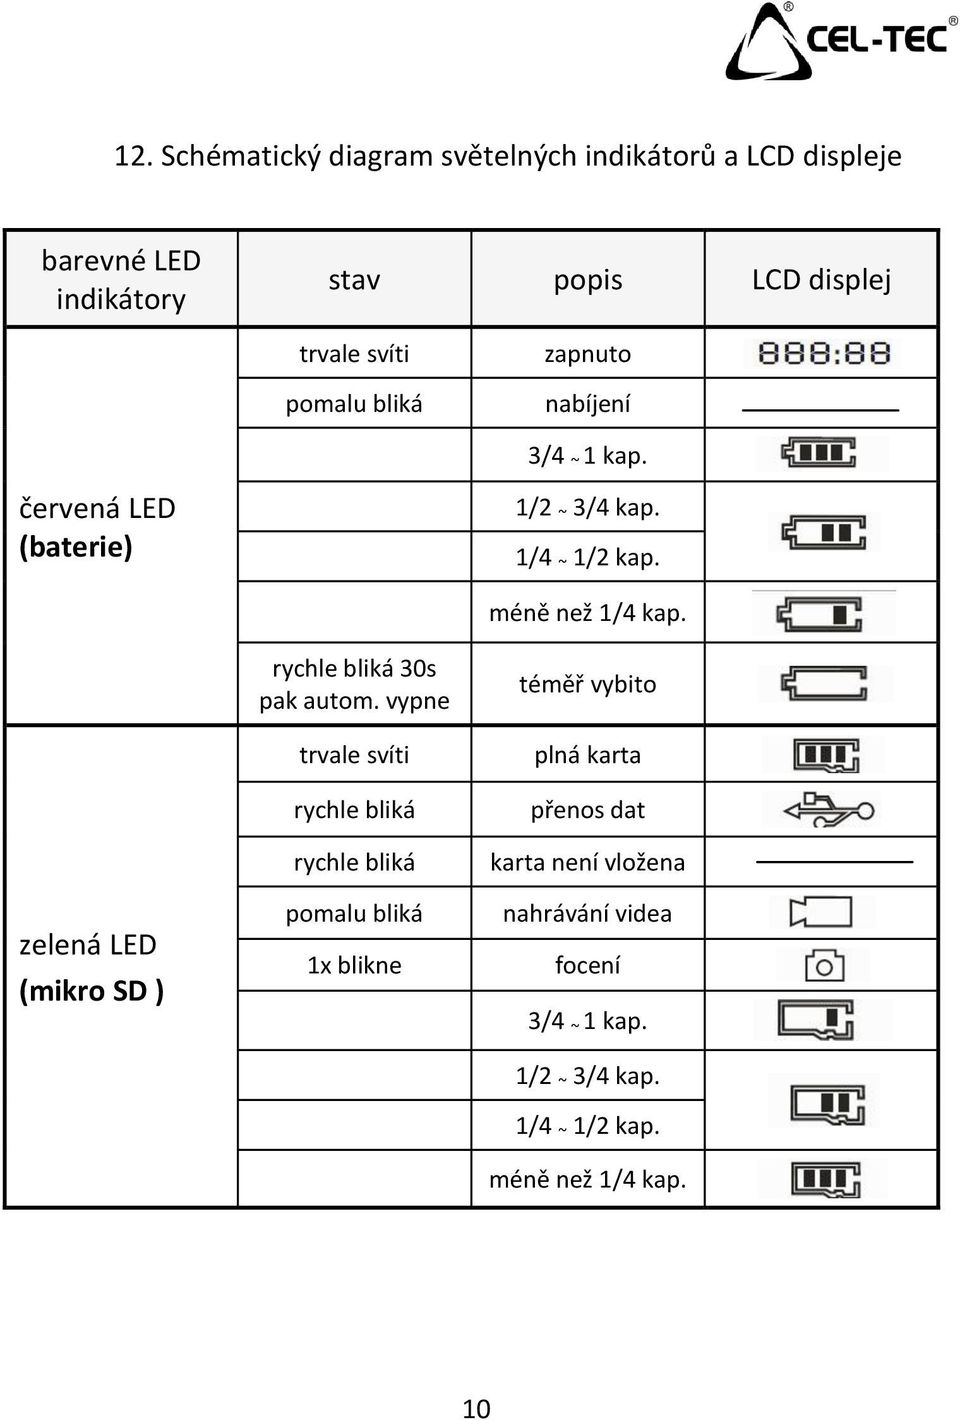 zelená LED (mikro SD ) rychle bliká 30s pak autom.